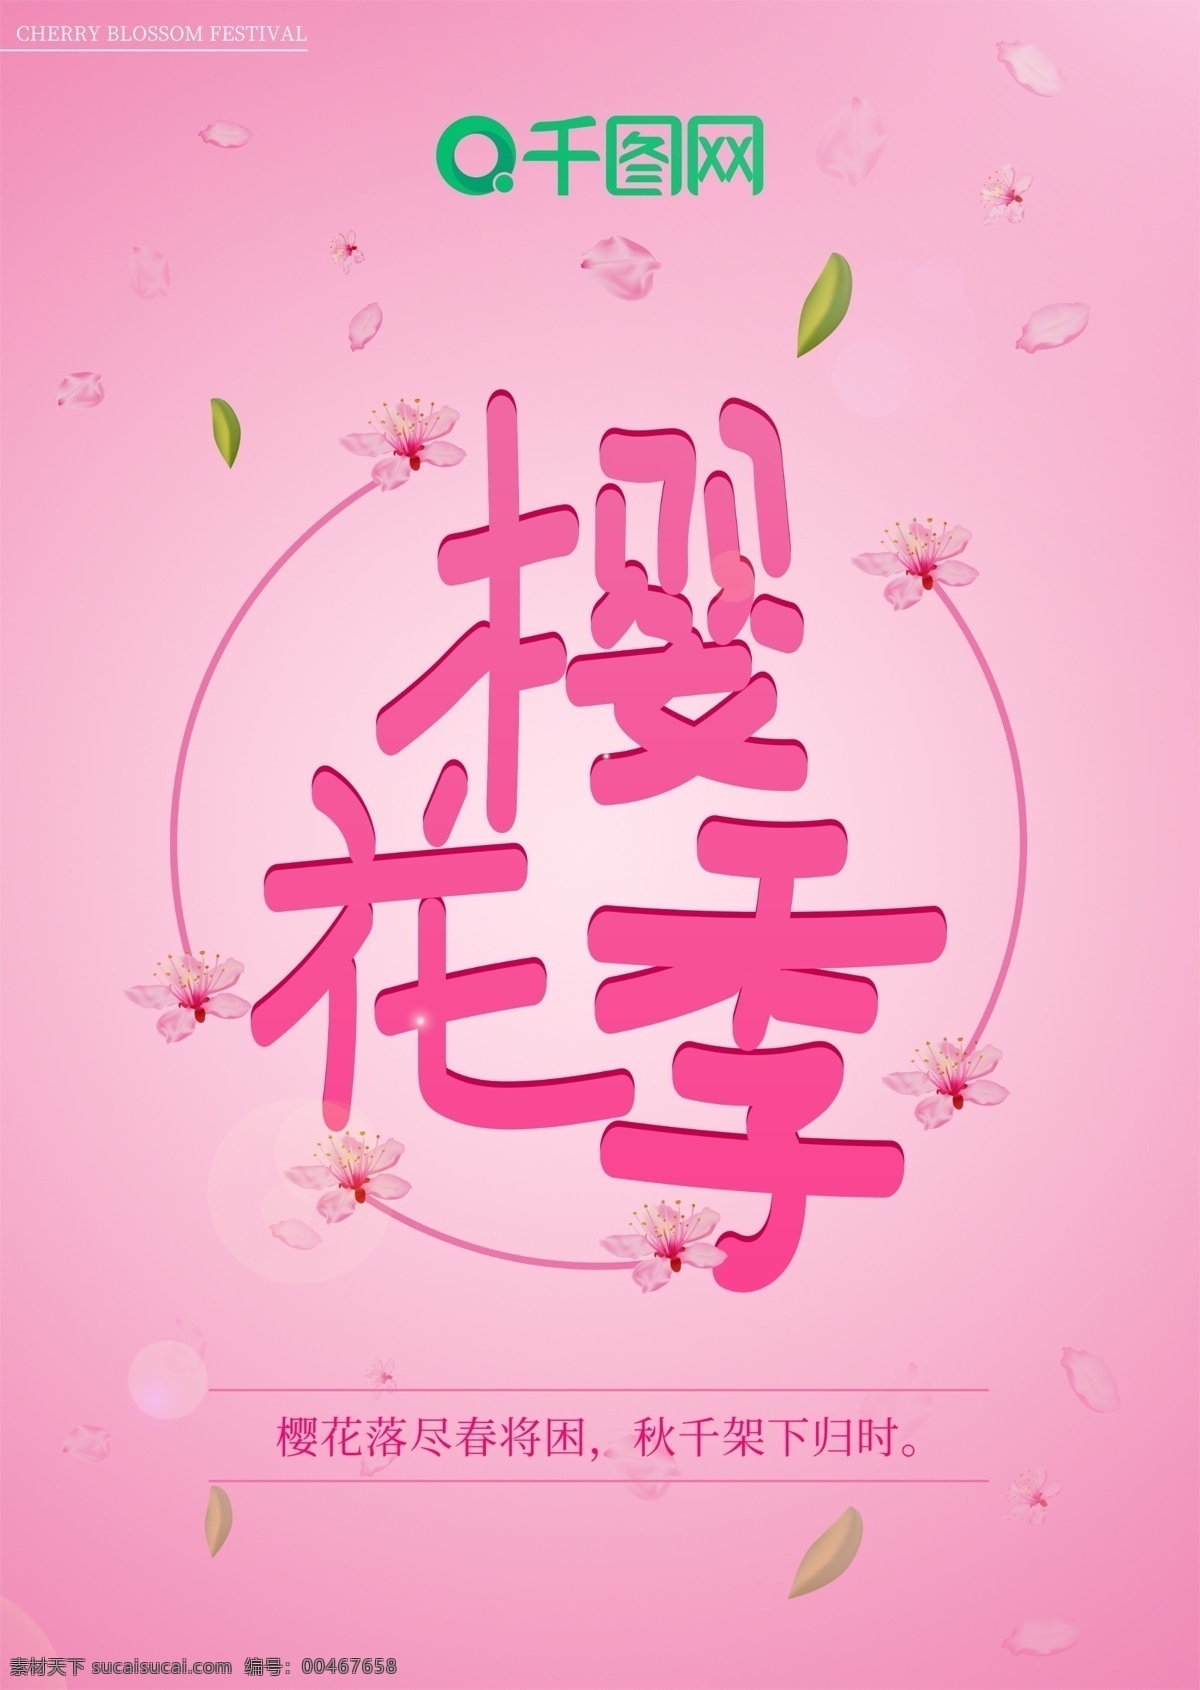 原创 樱花 季 创意 海报 手写 樱花节 字体 字体设计 h5海报 樱花季 樱花元素